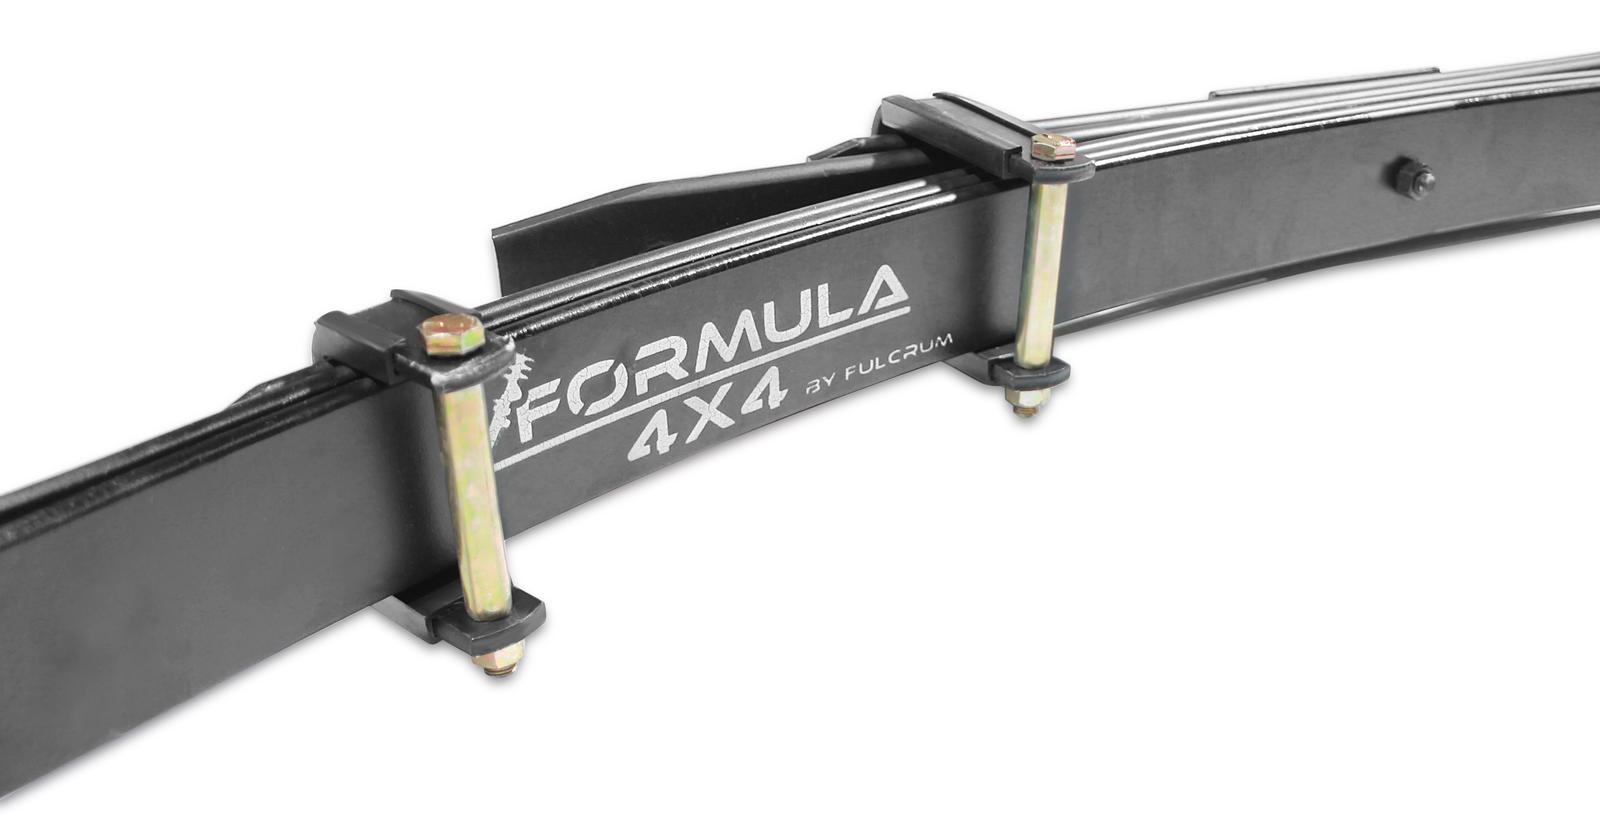 Formula Single RHS Front Leaf Spring - 50mm (Diesel) & 80mm (Petrol) Lift at 55-70kg to suit Toyota Hilux & 4 Runner